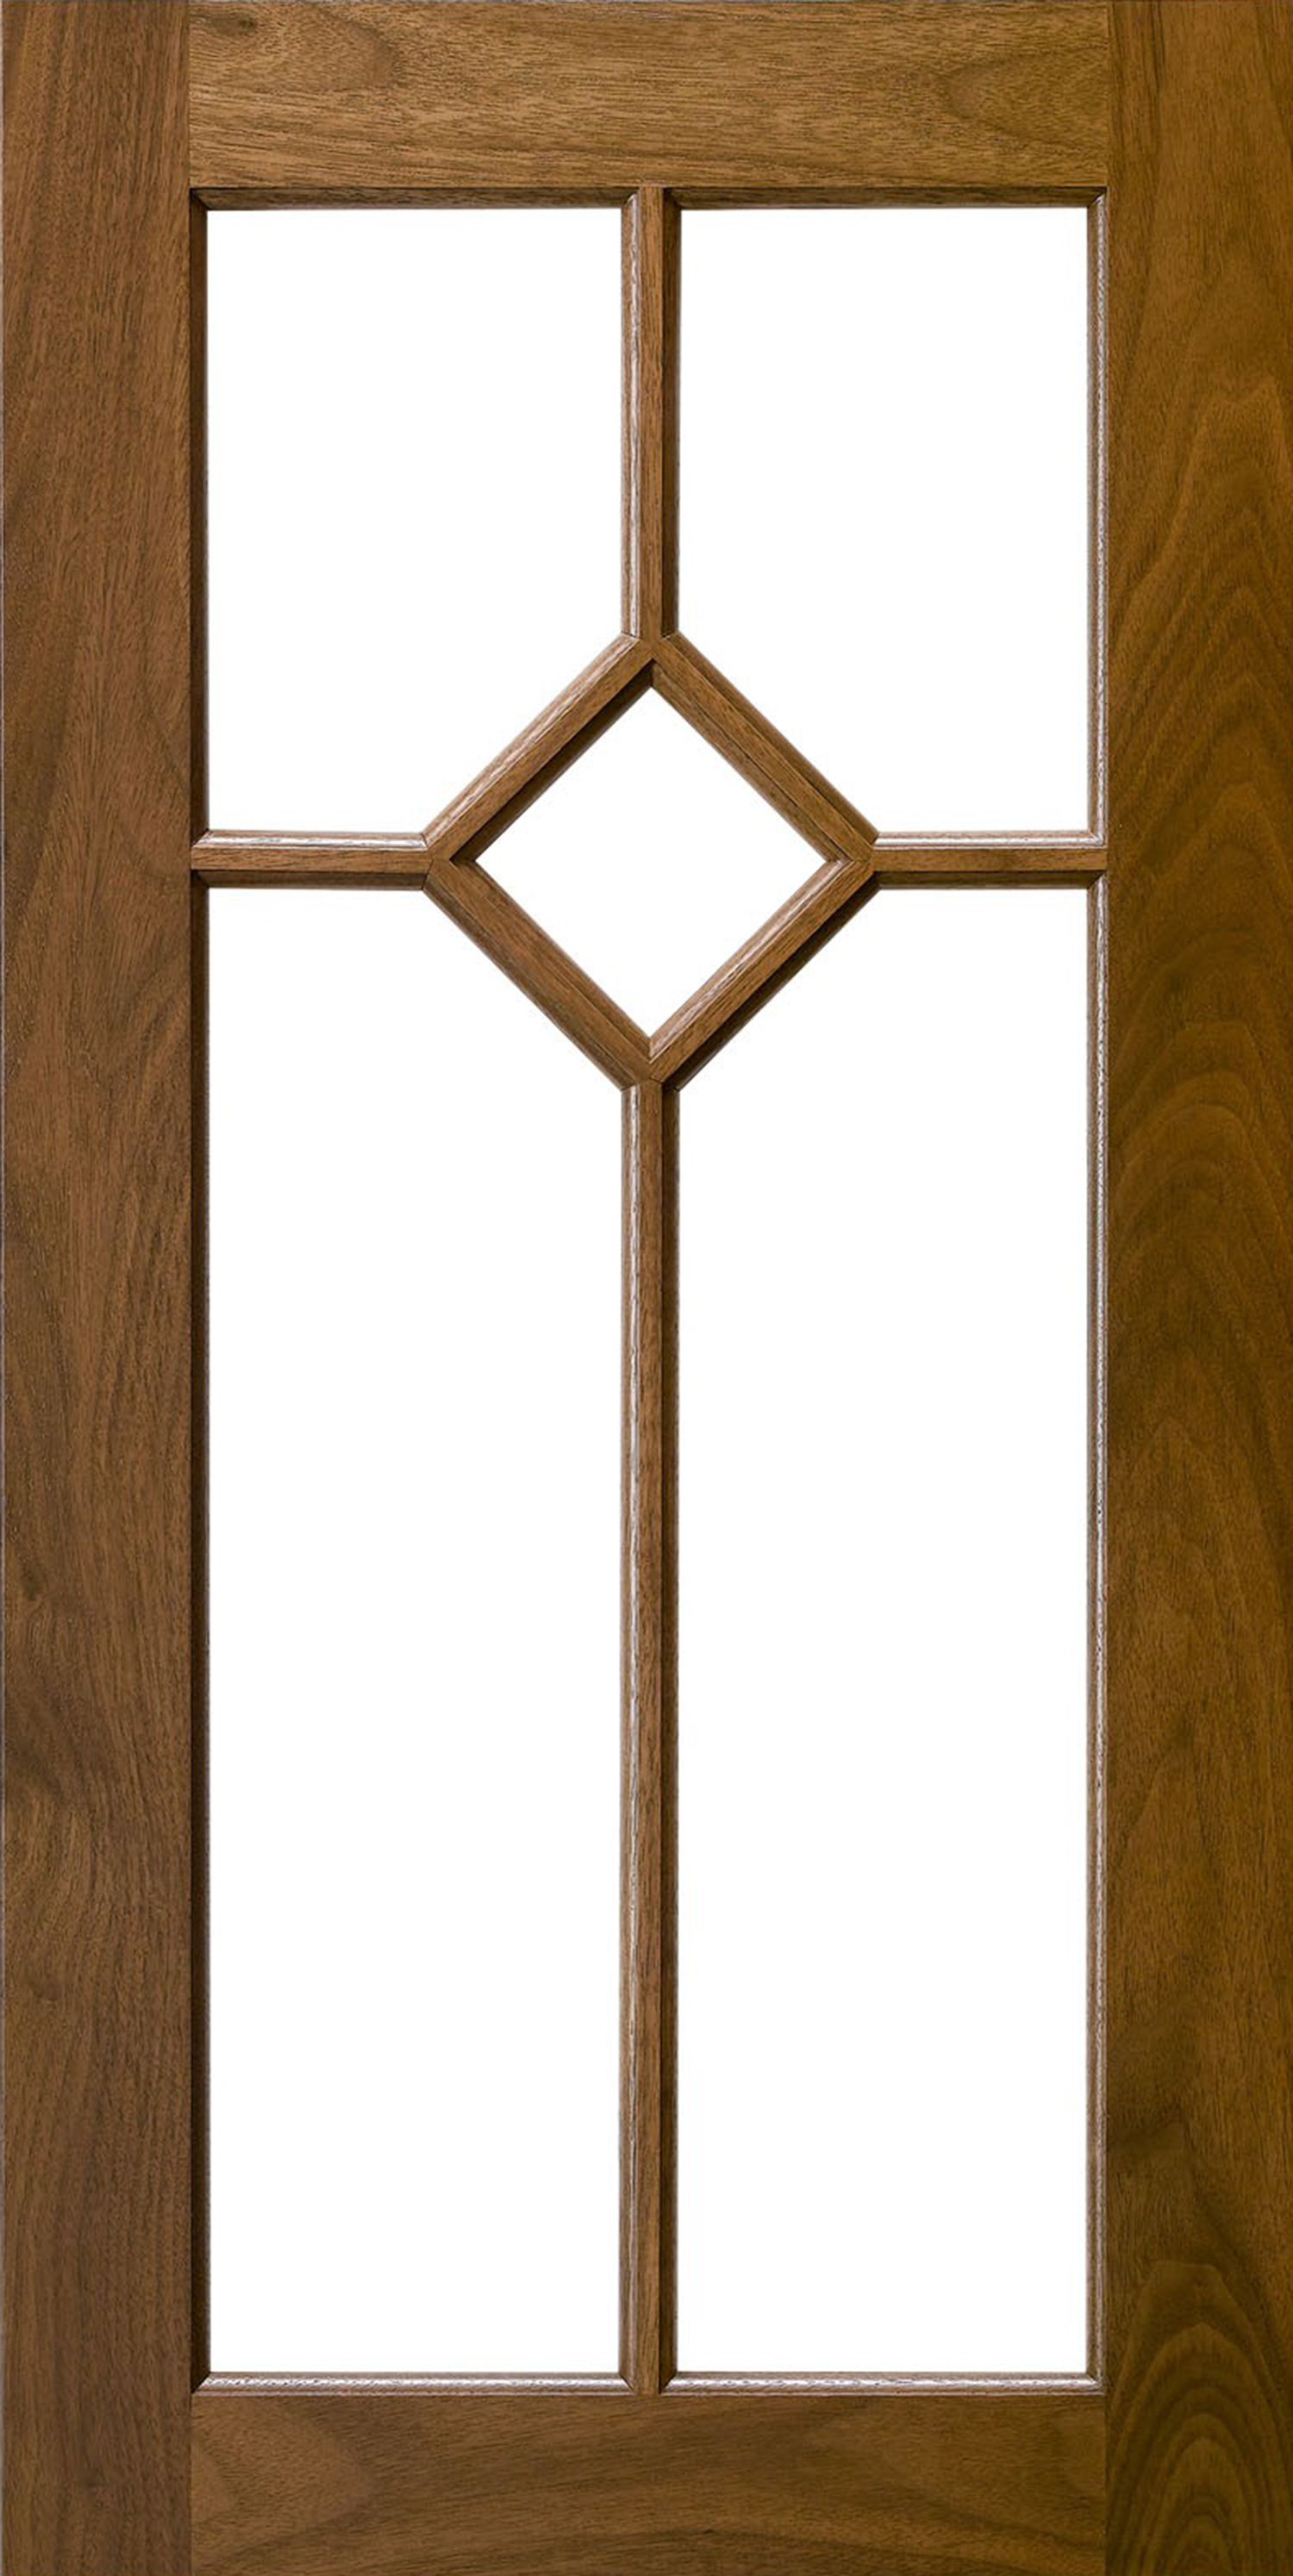 Mullion or Glass Frame Cabinet Doors